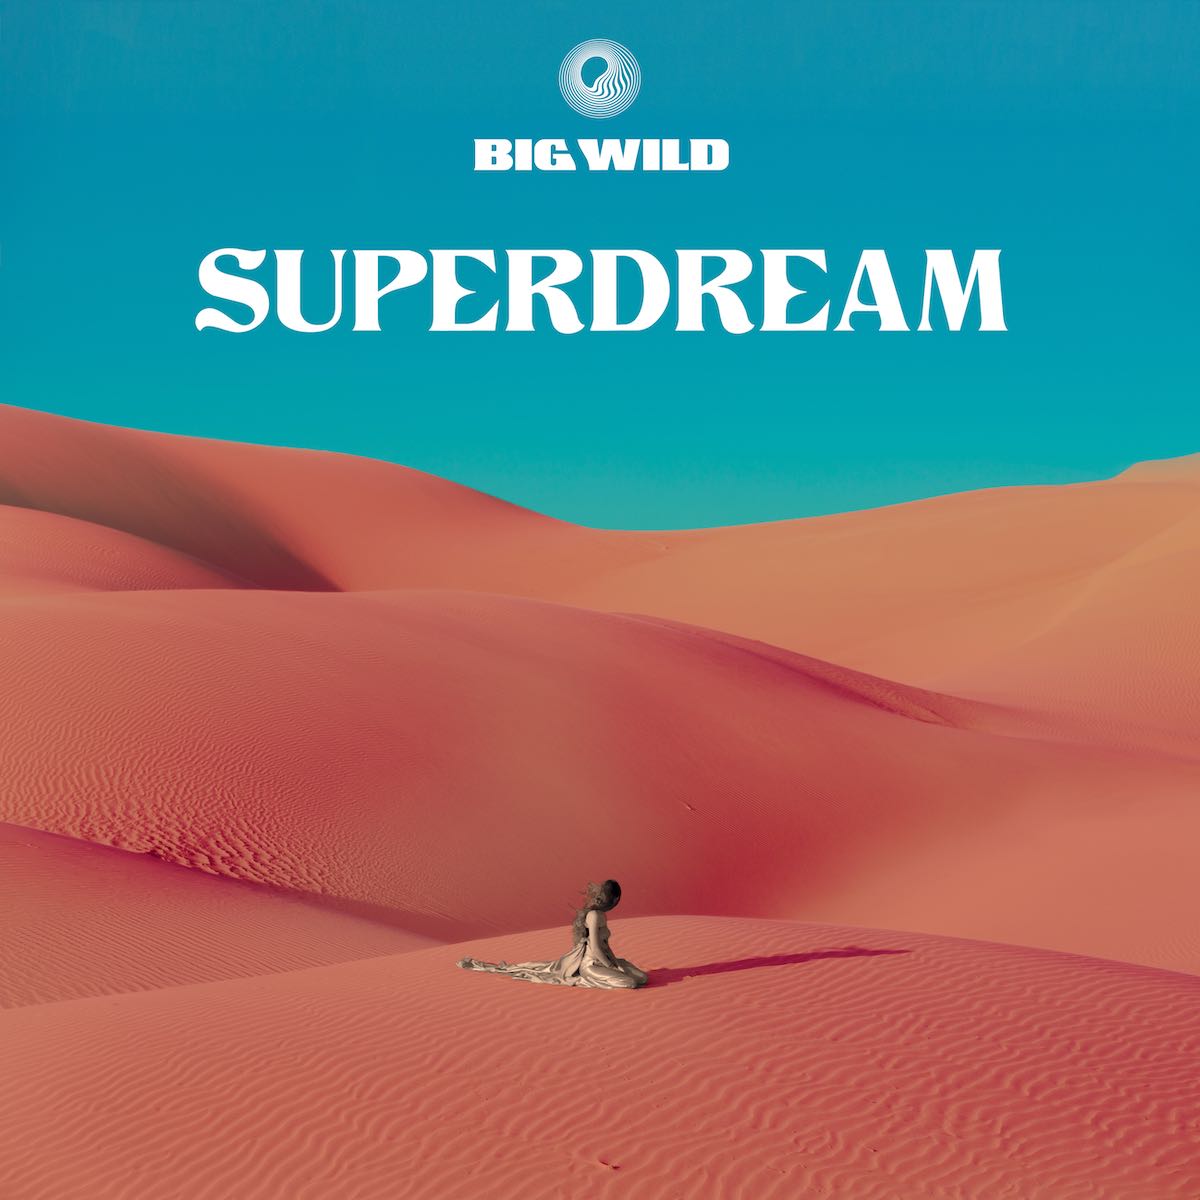 Big Wild Superdream